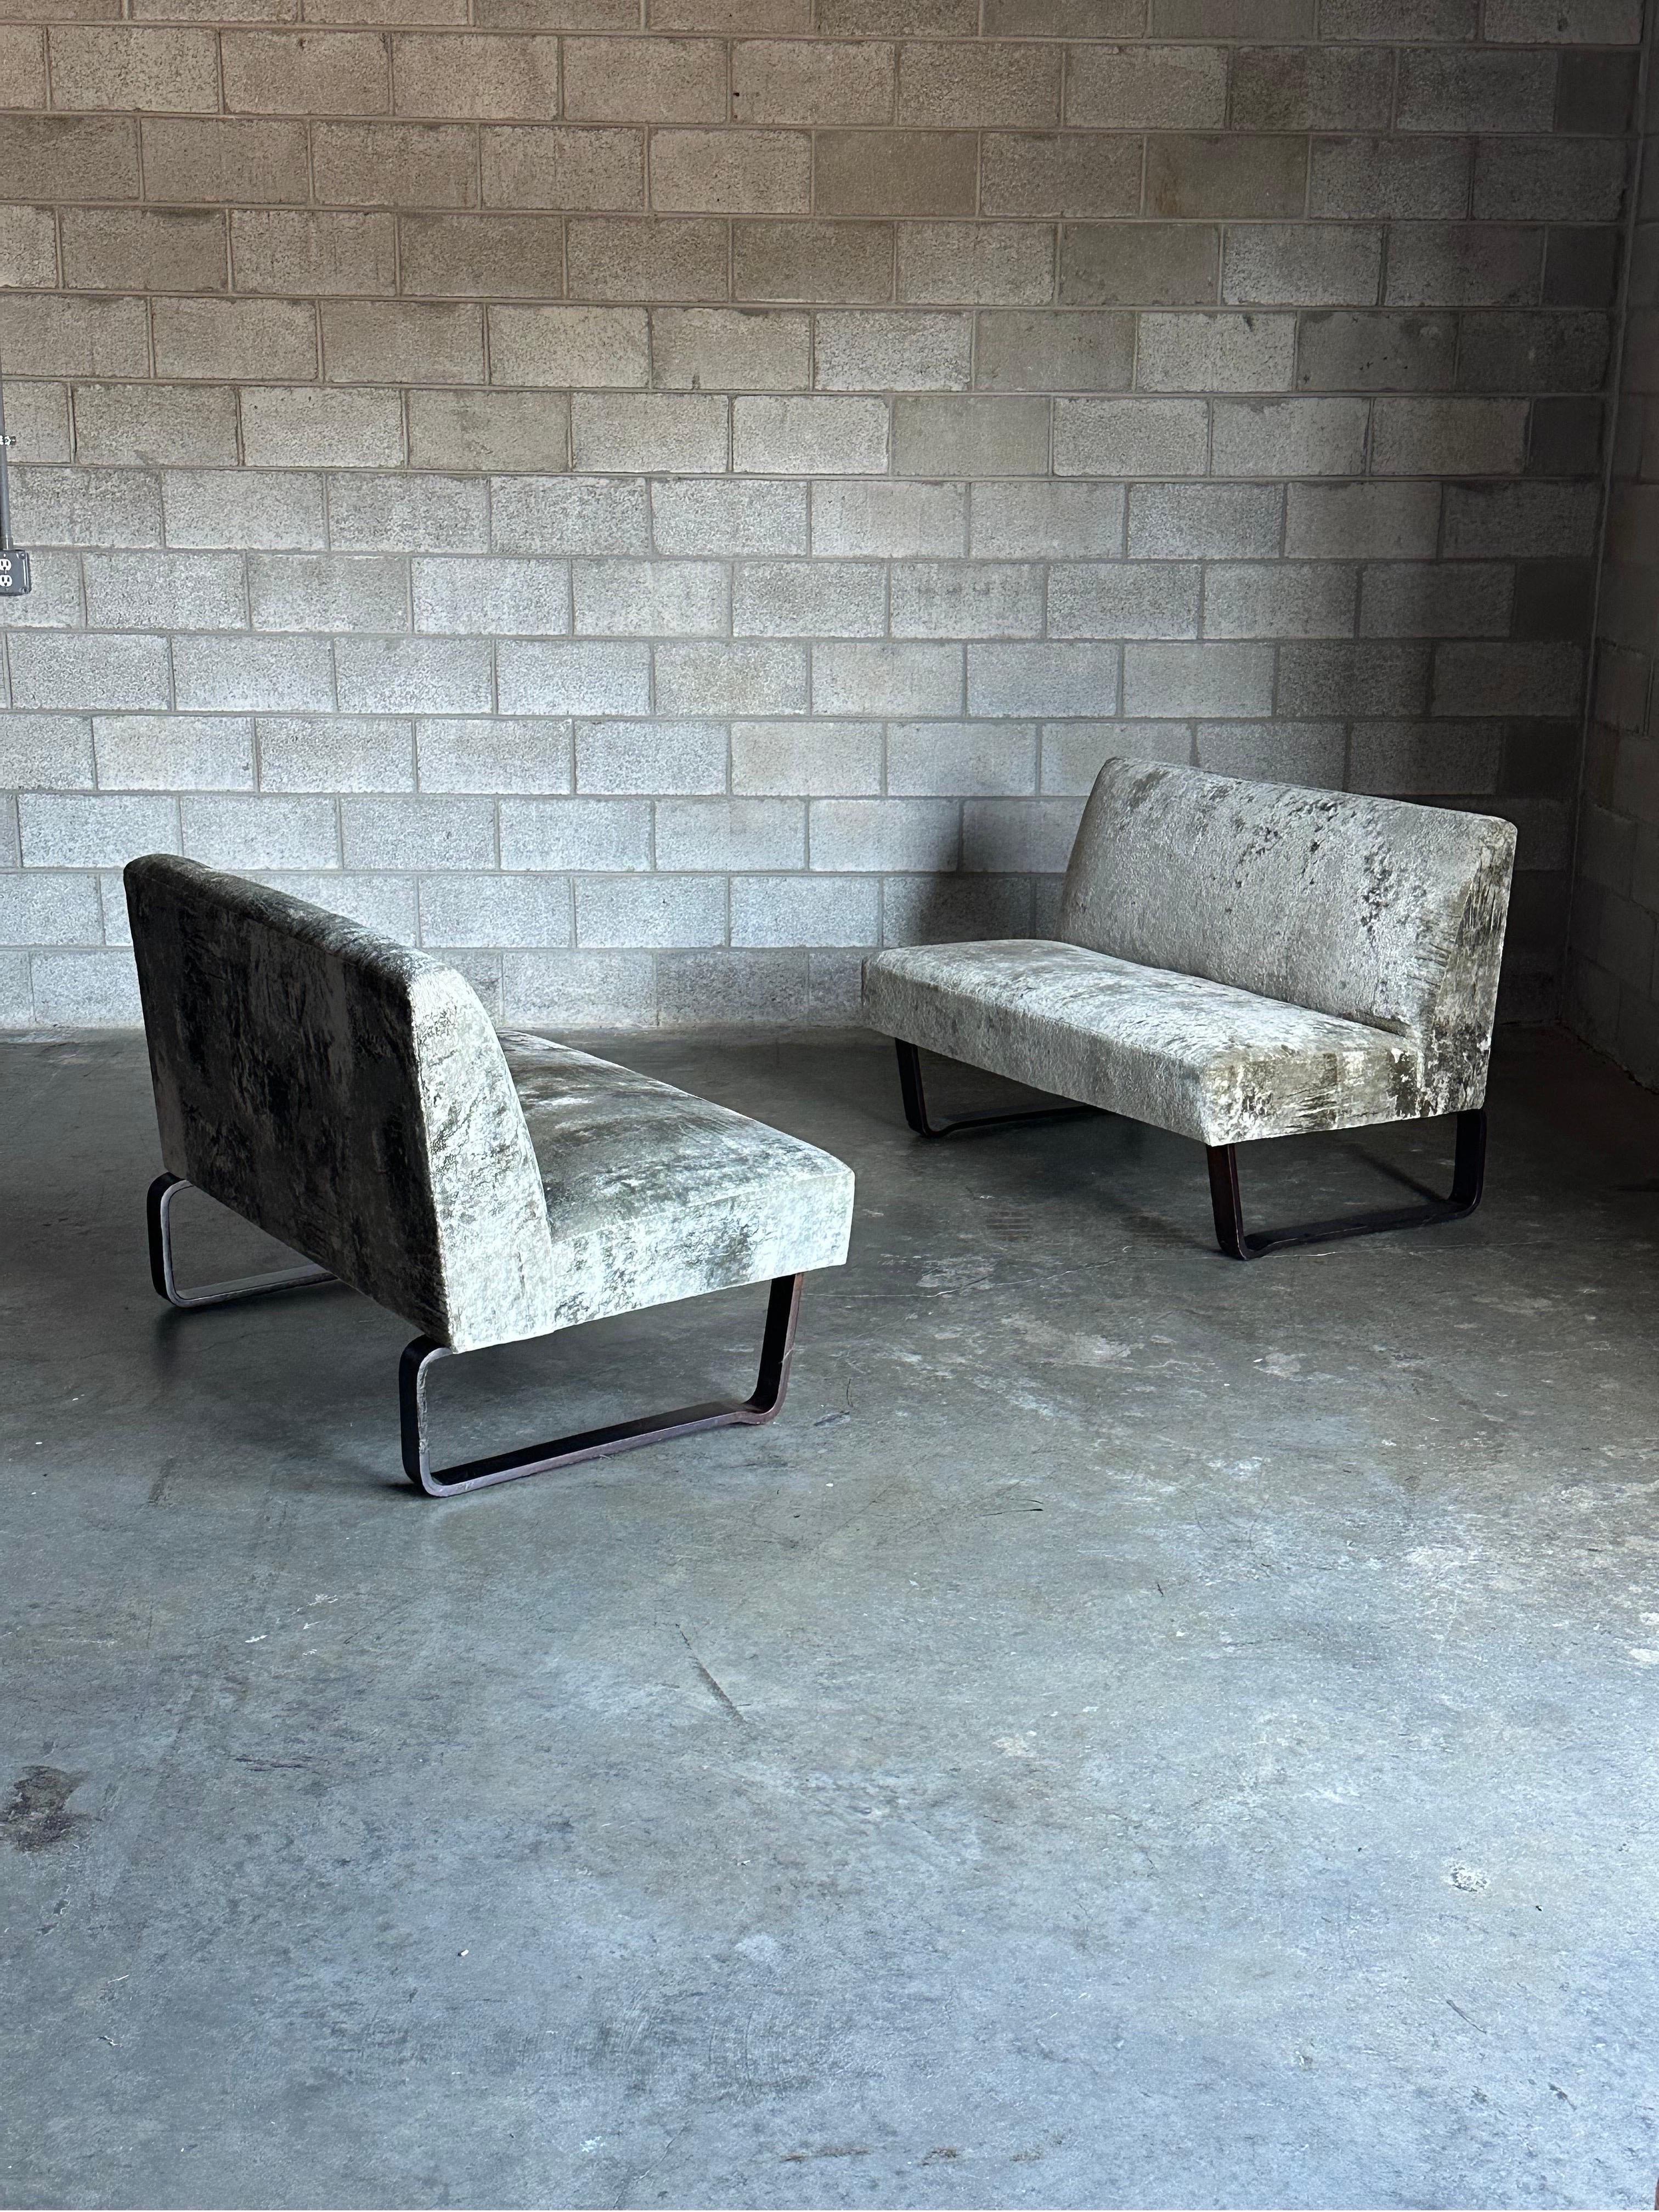 Rare paire de canapés conçus par Edward Wormley pour Dunbar Furniture. Les canapés ont un profil sans accoudoir et sont dotés de deux pieds en acajou semblables à des traîneaux. On les trouve parfois sous forme de canapé, mais une paire de canapés